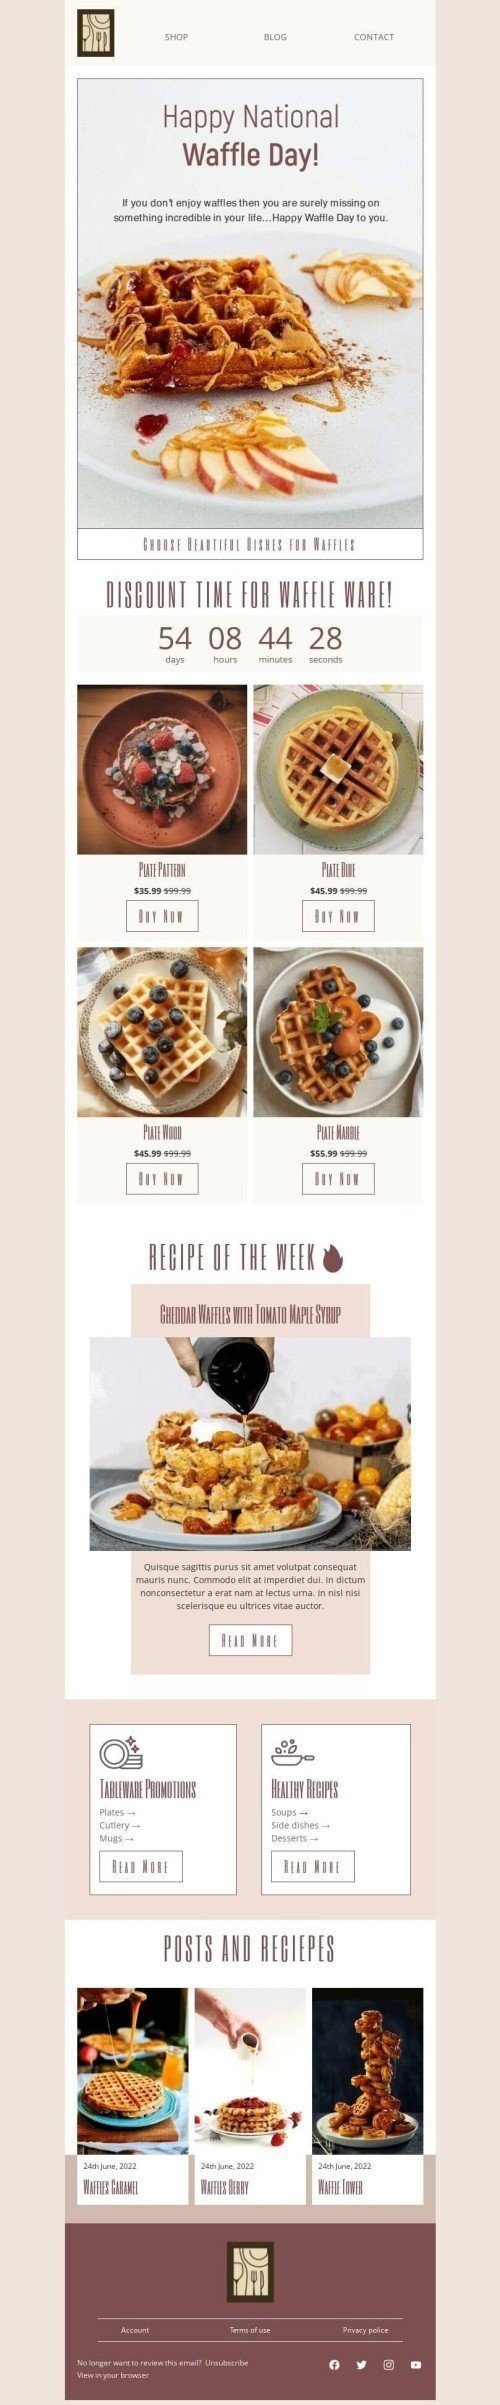 Plantilla de correo electrónico «Elige hermosos platos para gofres» de Día Nacional del Waffle para la industria de Muebles, interior y bricolaje Vista de escritorio